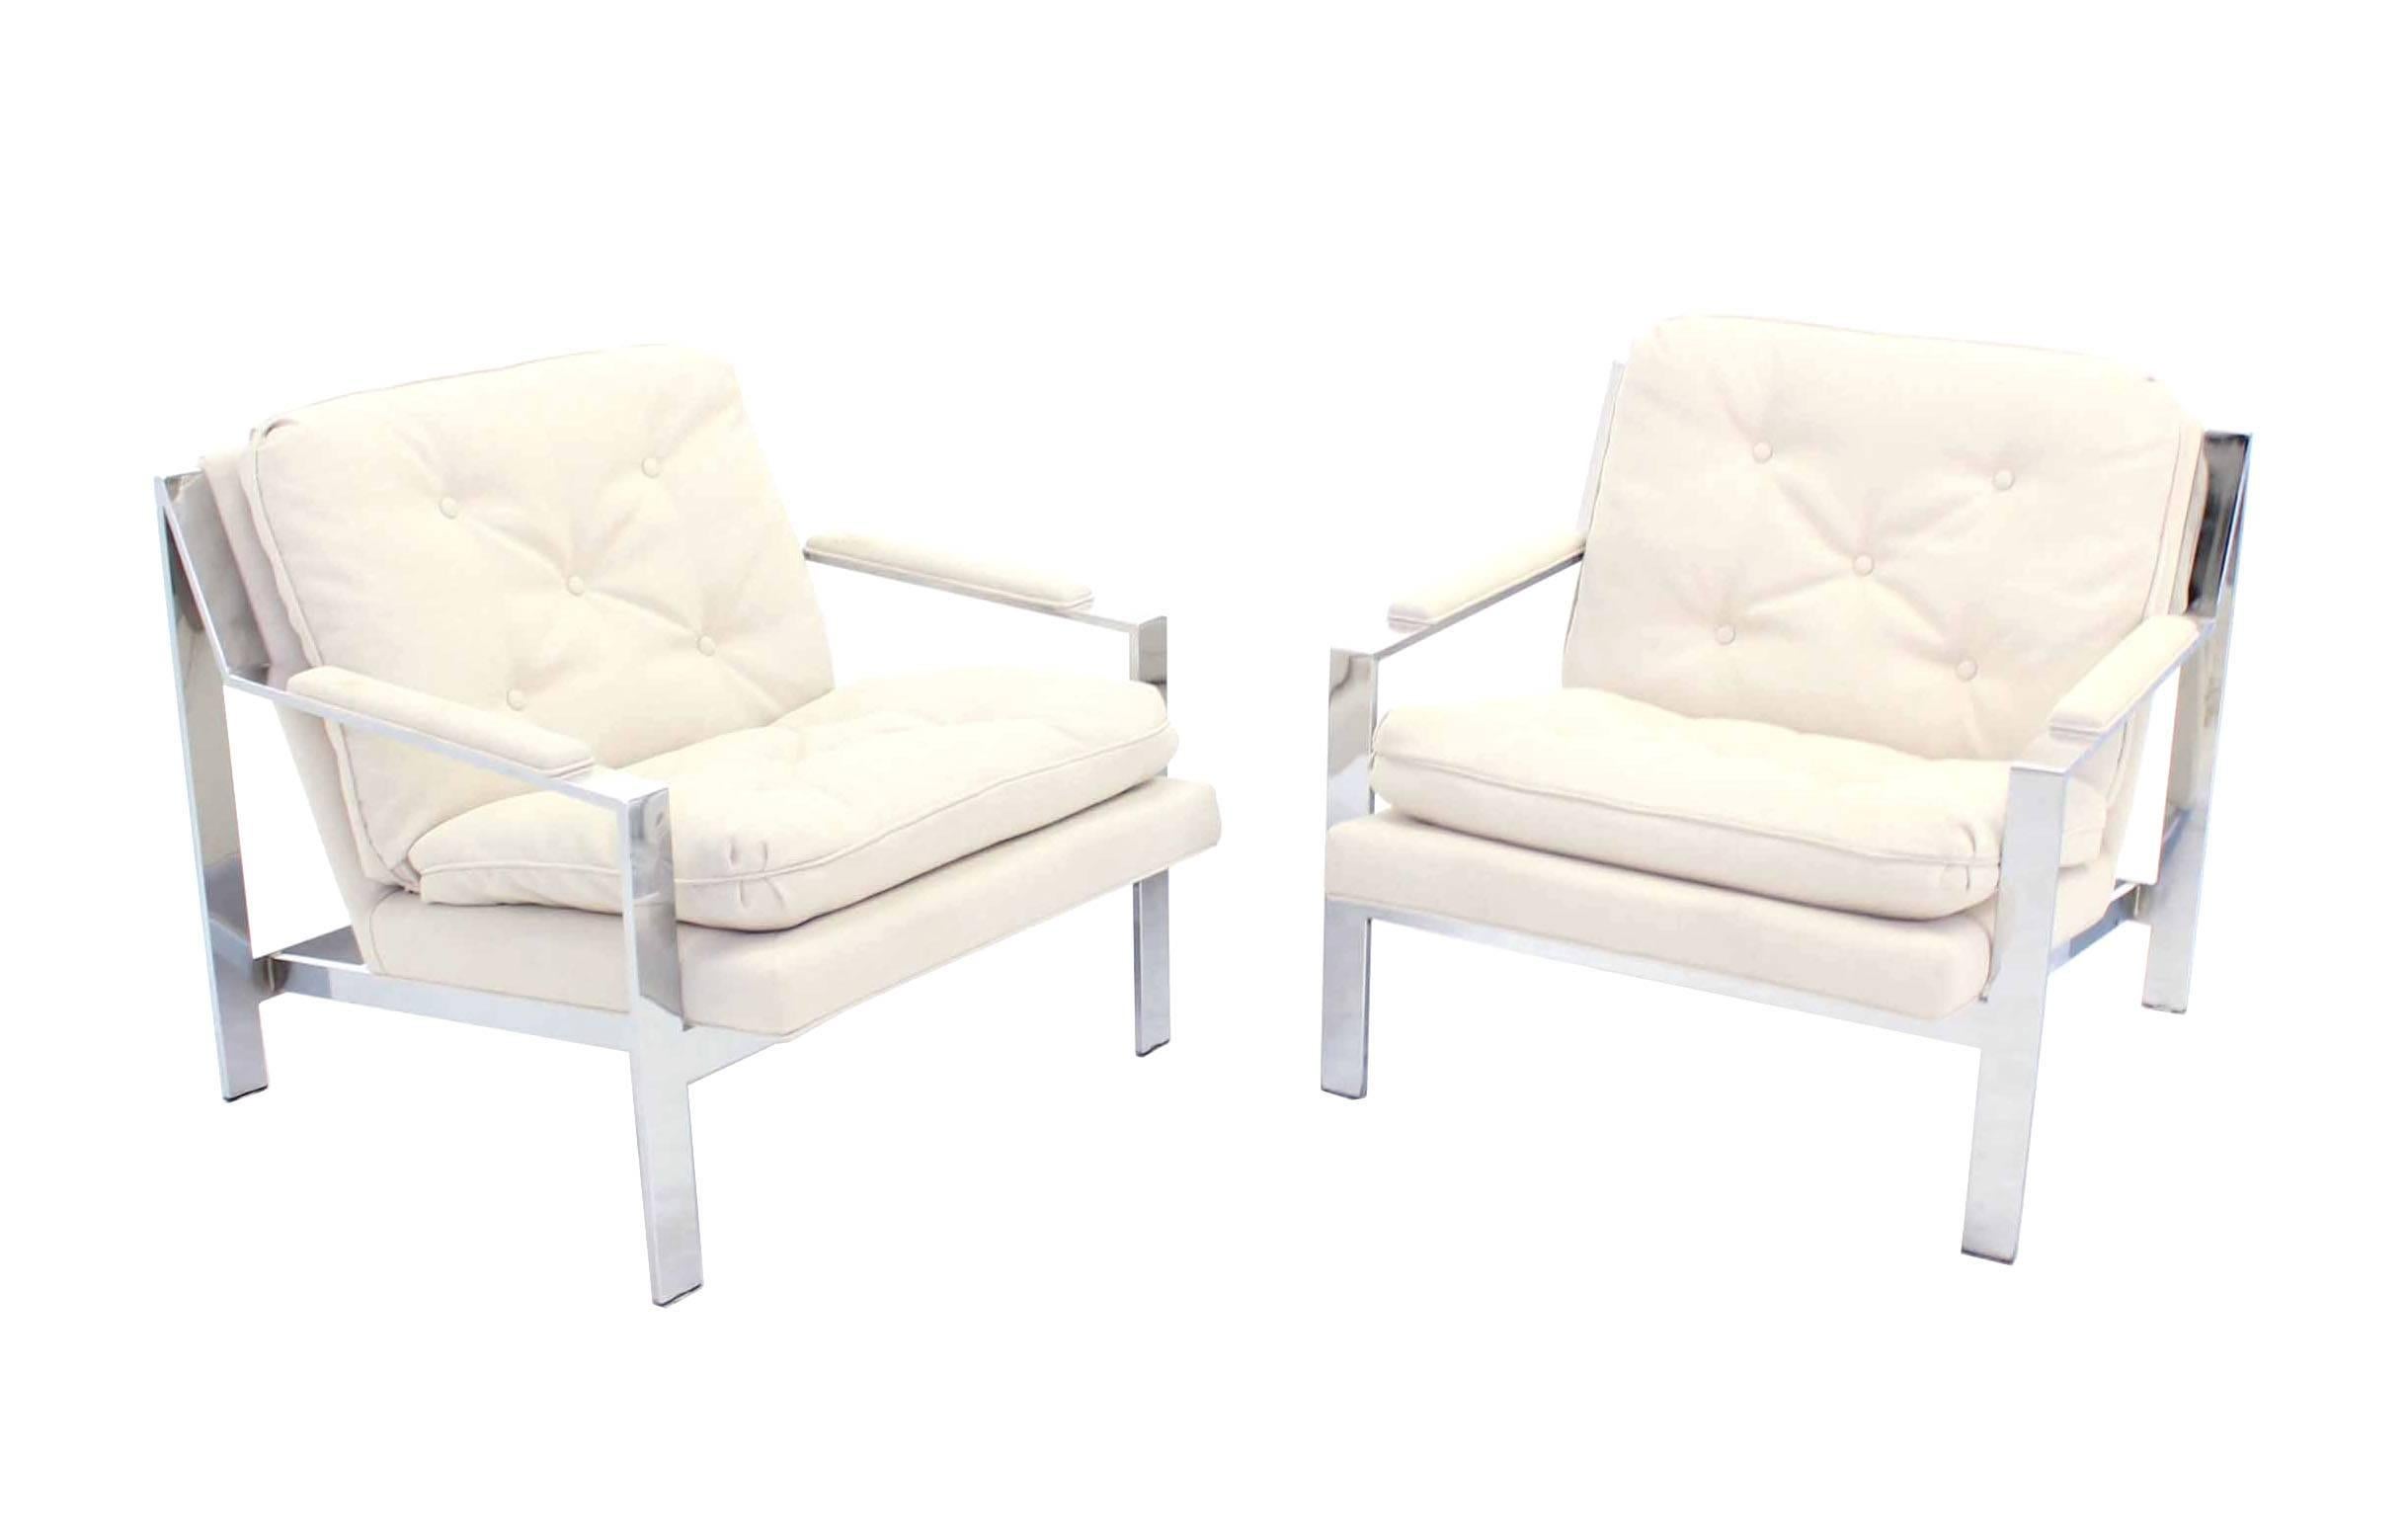 Paire de chaises longues Cy Mann en tissu blanc semblable à du lin, nouvellement tapissées.